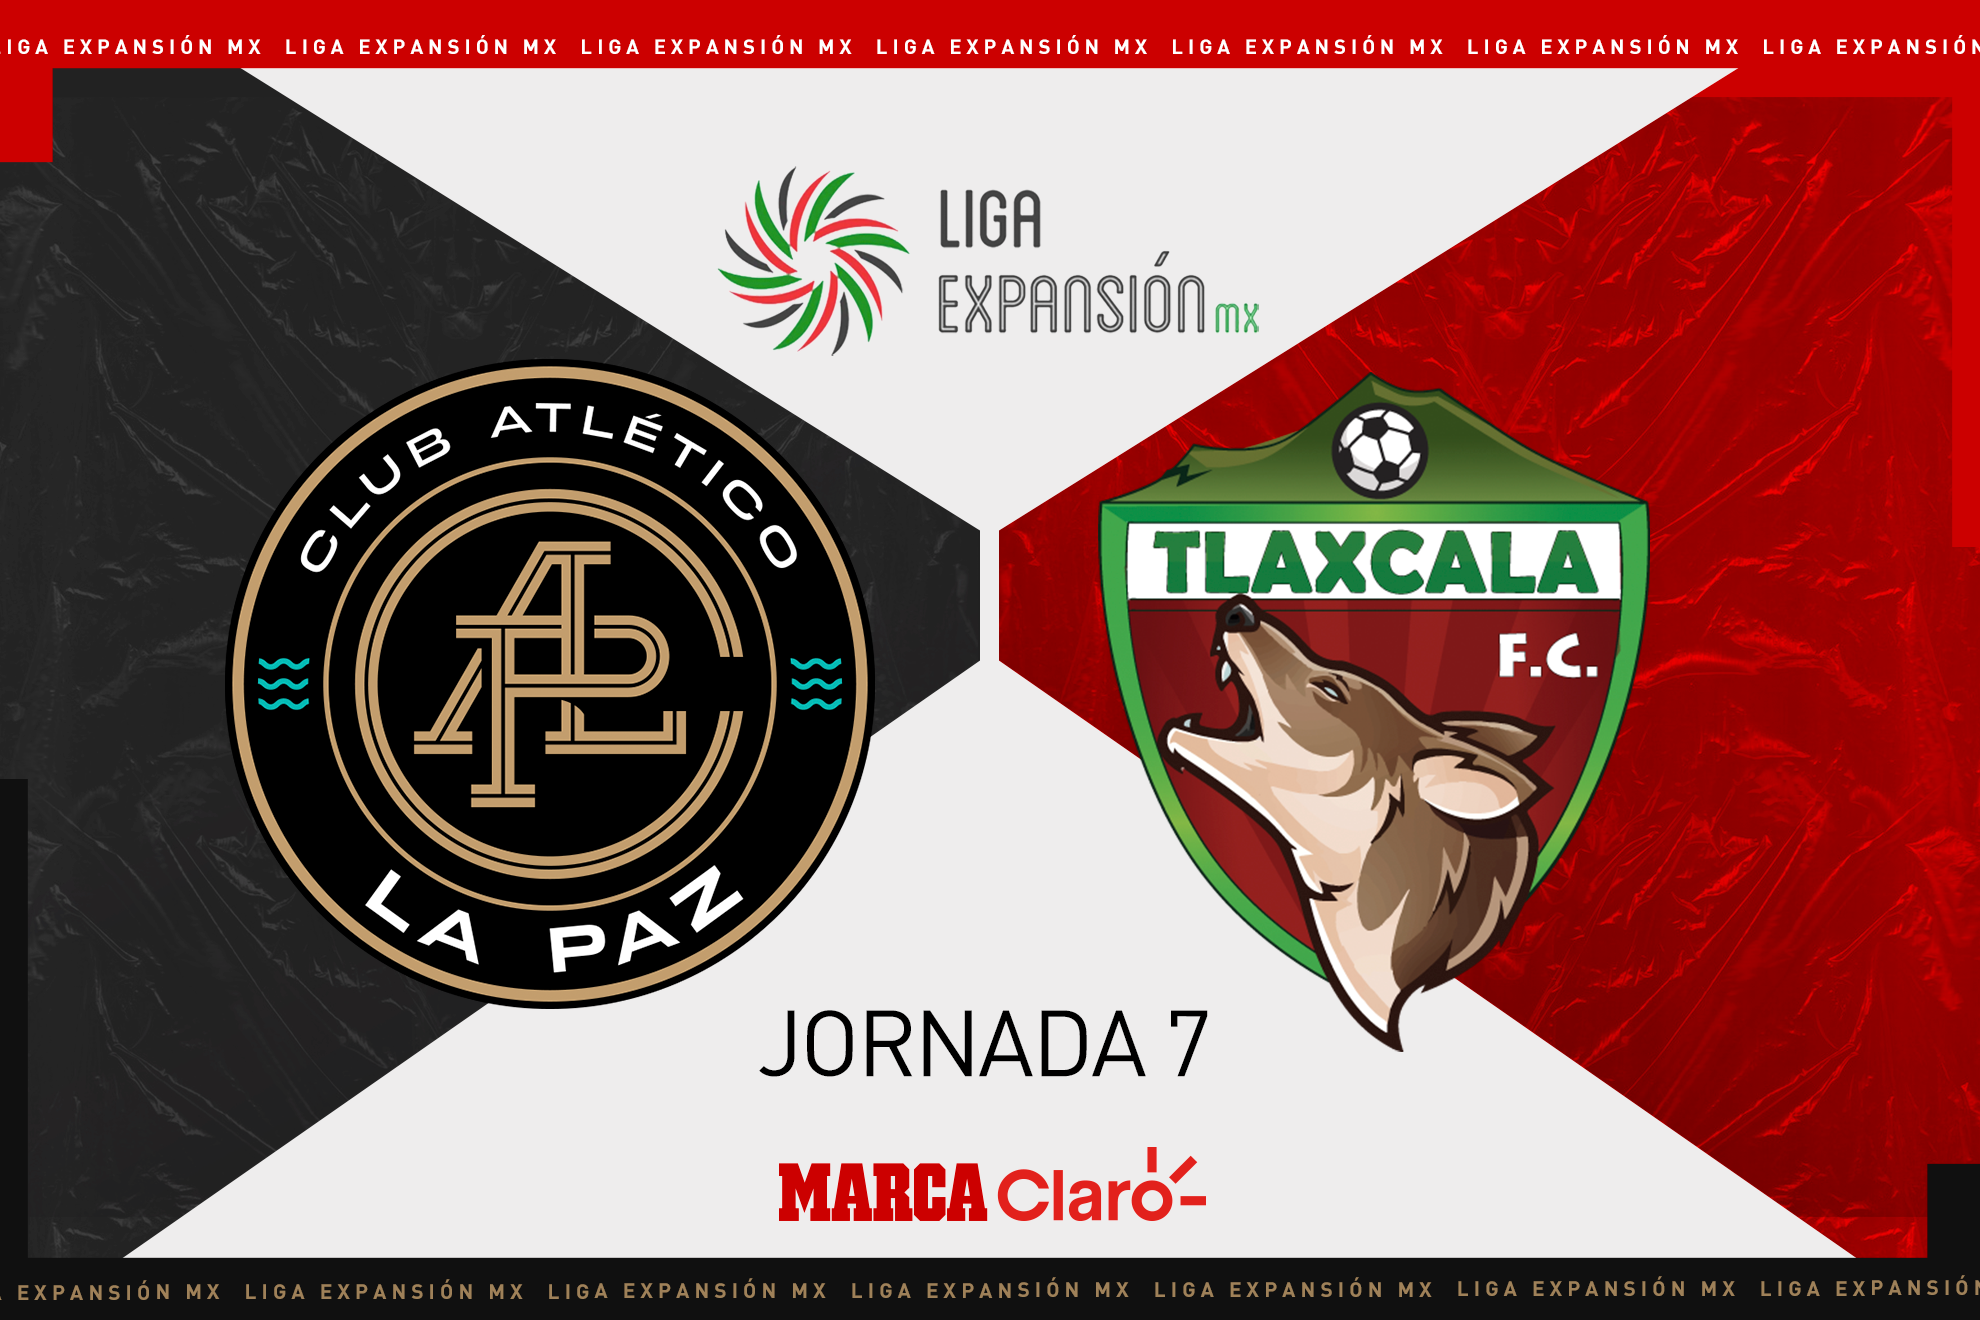 Club Atlético La Paz vs Tlaxcala FC, en vivo el streaming online del partido de la jornada 7 del Apertura 2022 de la Liga Expansión MX